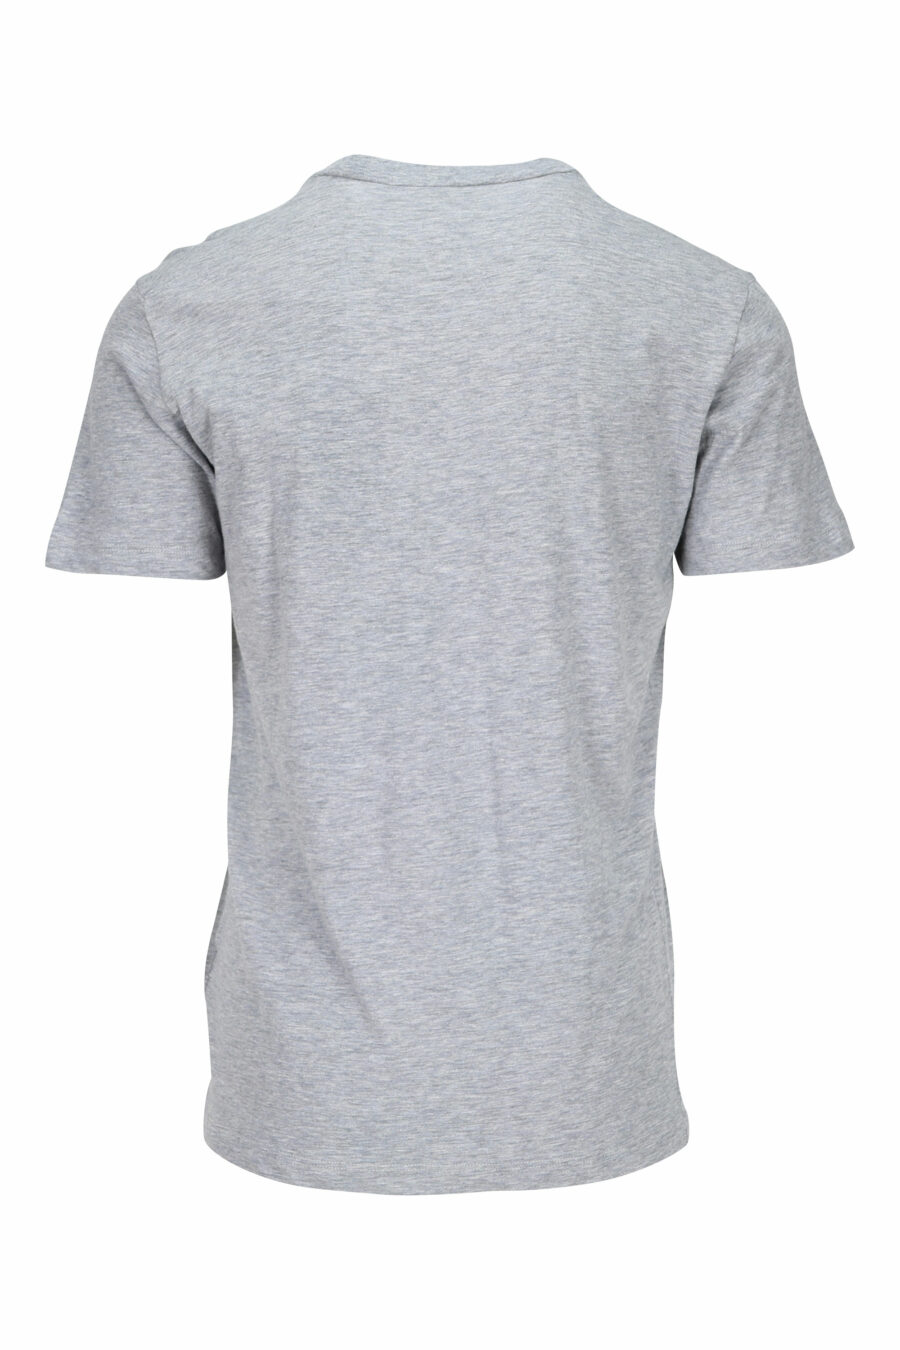 T-shirt cinzenta com maxilogue azul clássico - 8054148116491 1